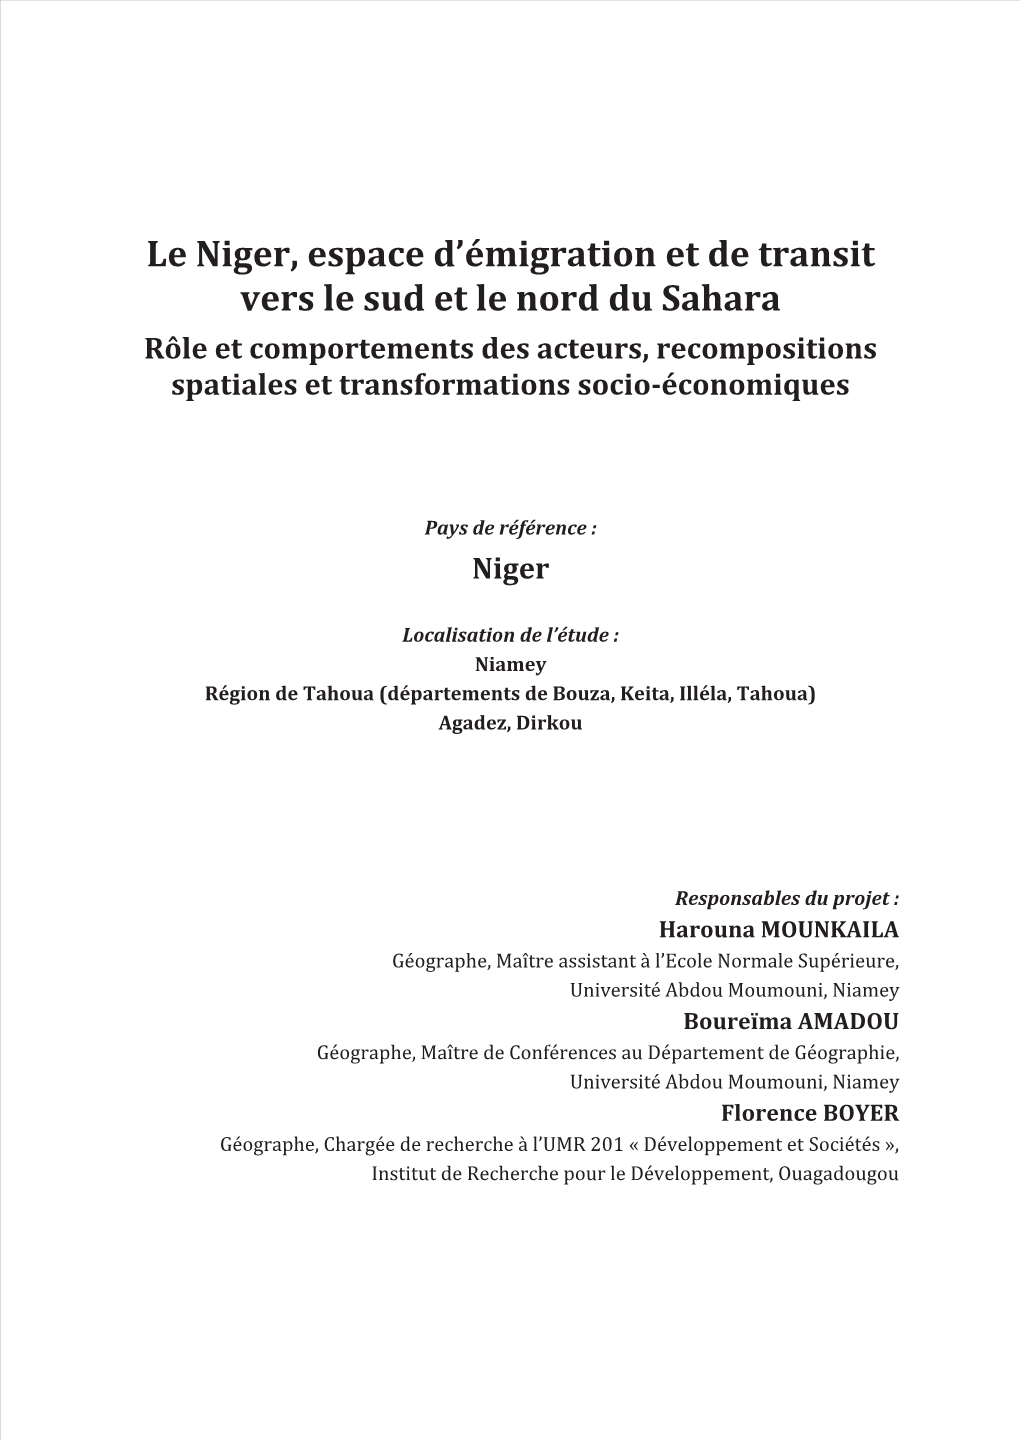 Le Niger, Espace D'émigration Et De Transit Vers Le Sud Et